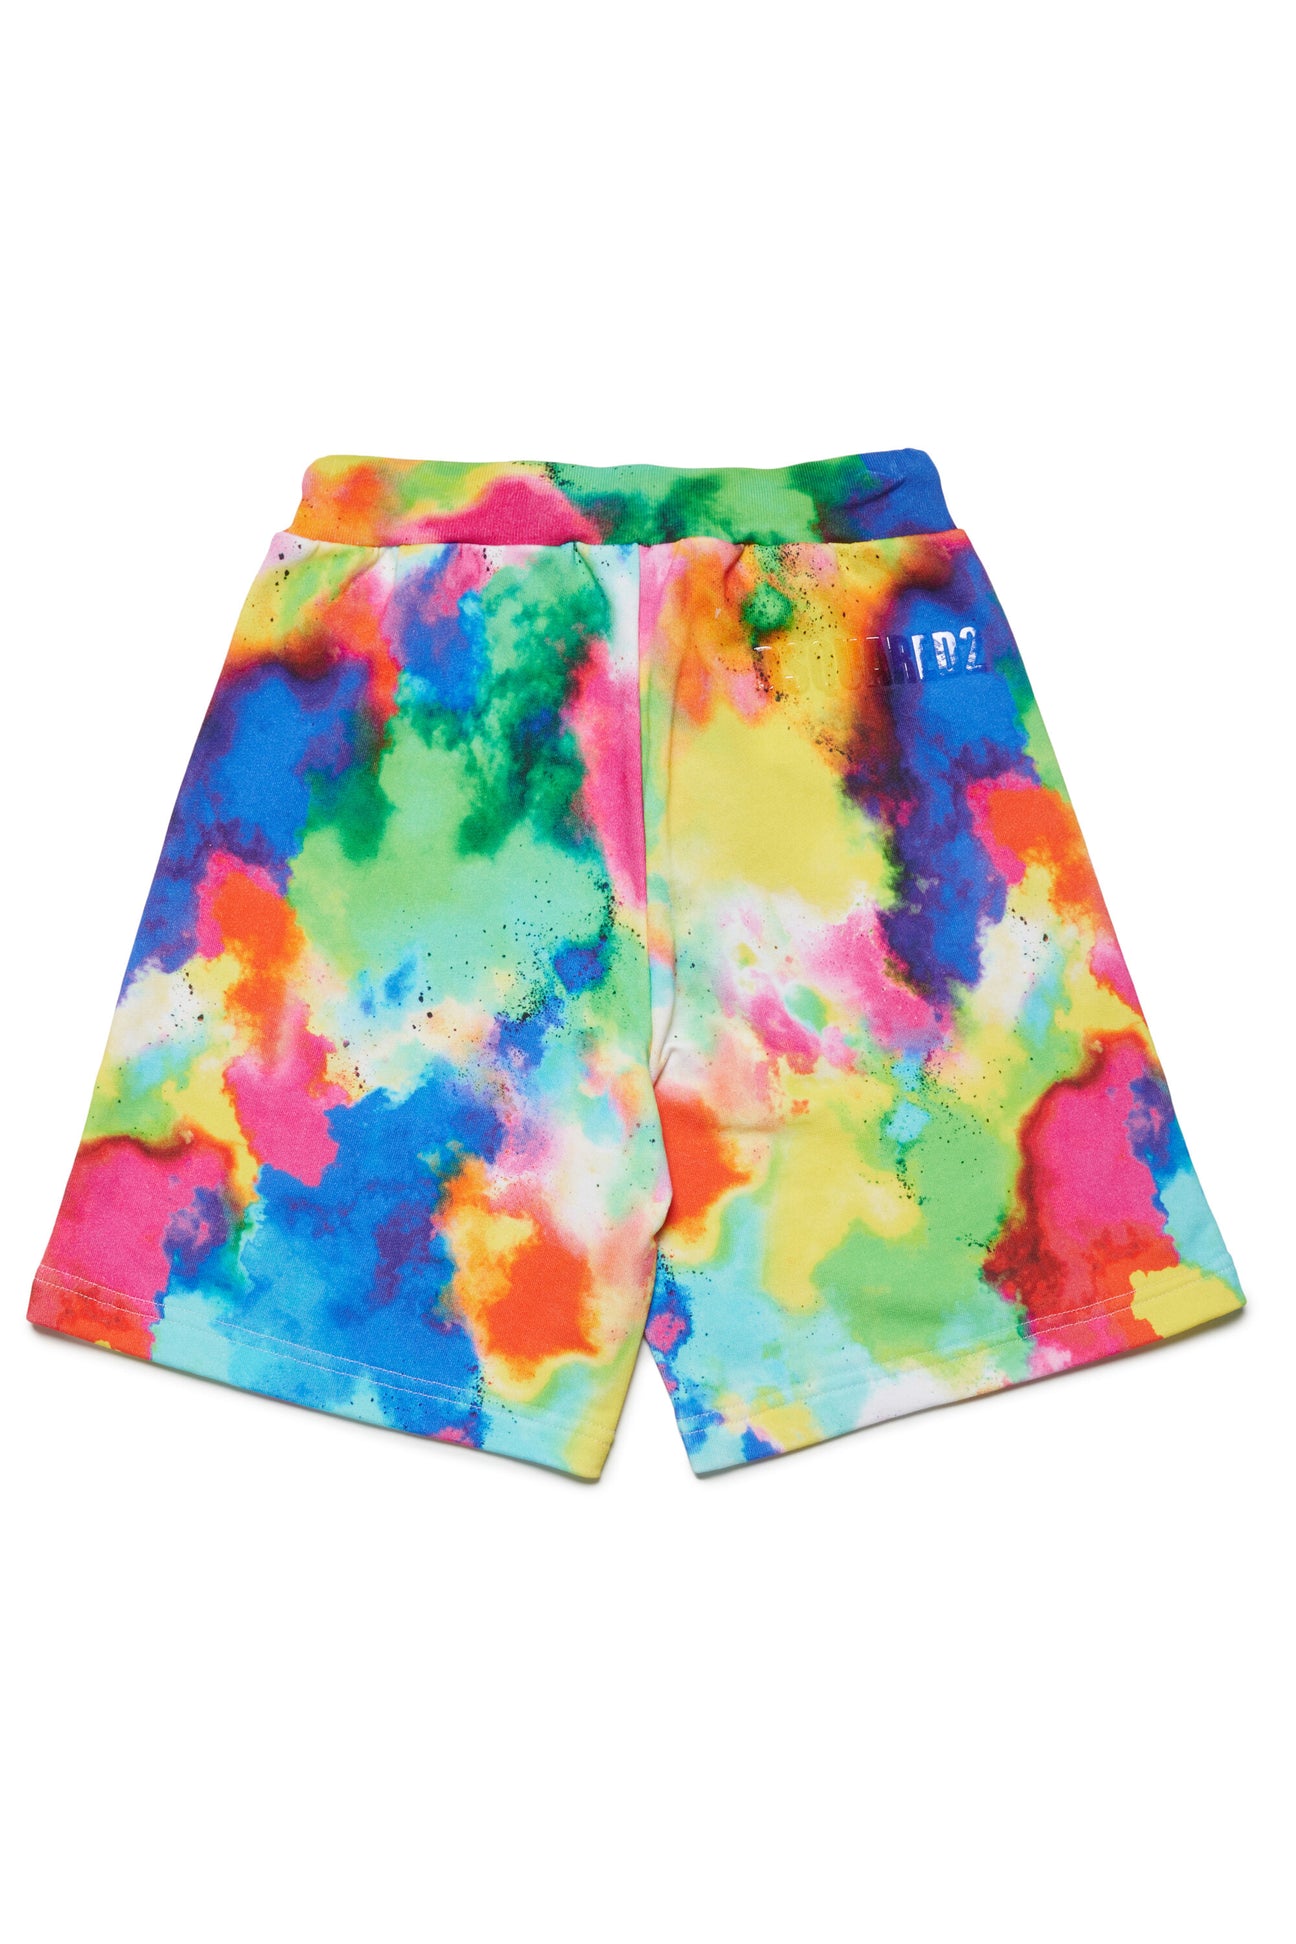 Pantalones cortos en chándal multicolor Pantalones cortos en chándal multicolor